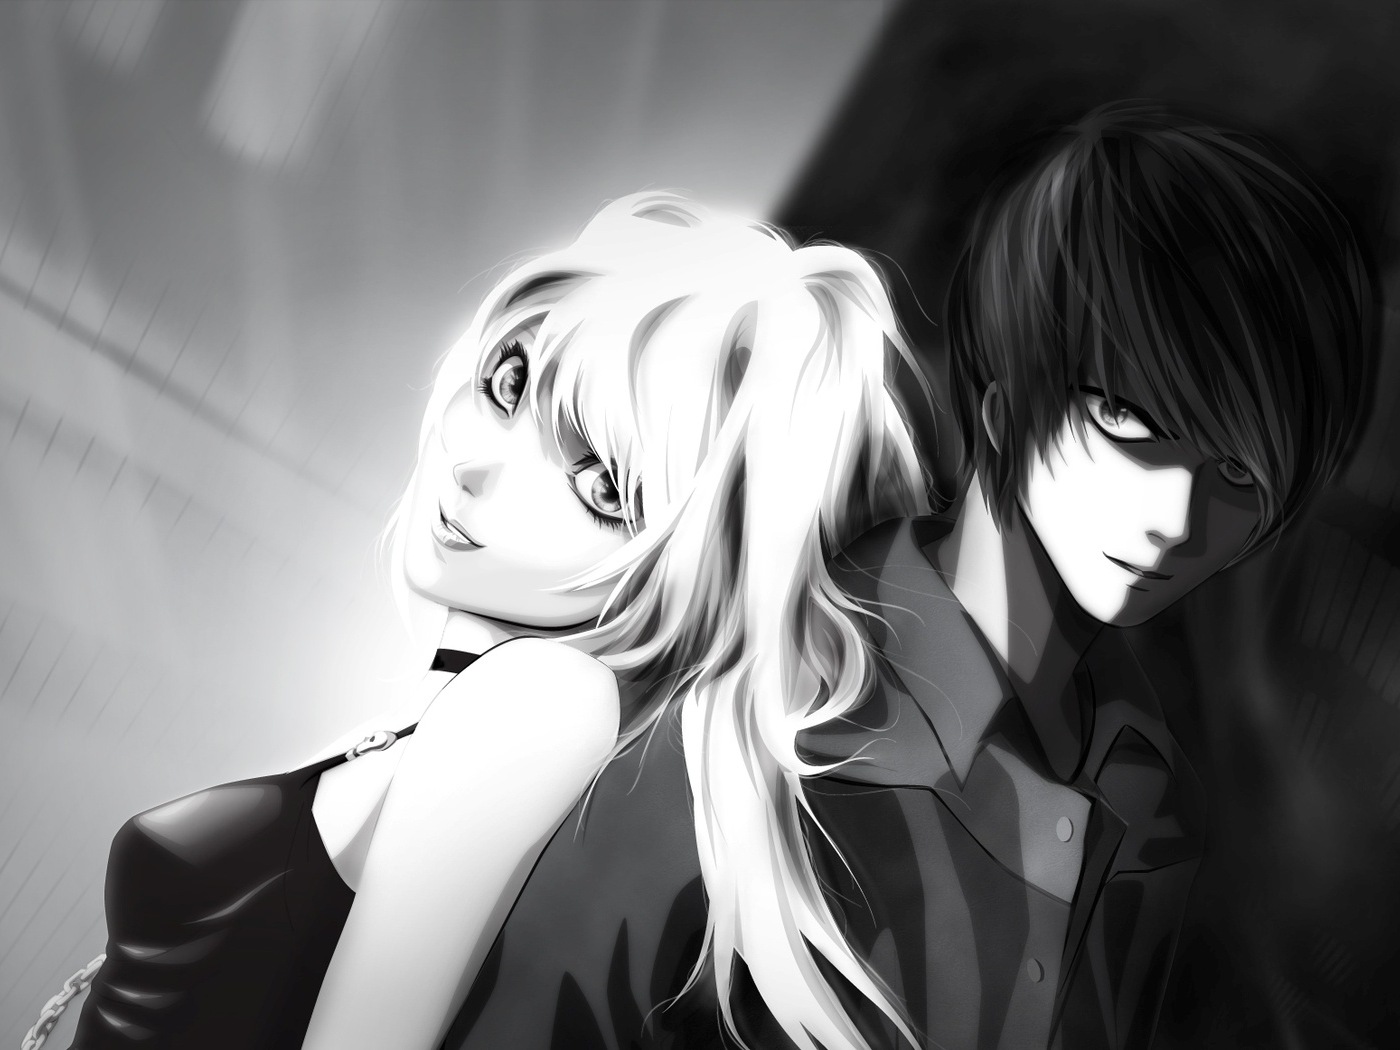 3d обои Аманэ Миса и Ягами Лайт стоят спина к спине (аниме Тетрадь смерти / Death Note)  черно-белые # 88530